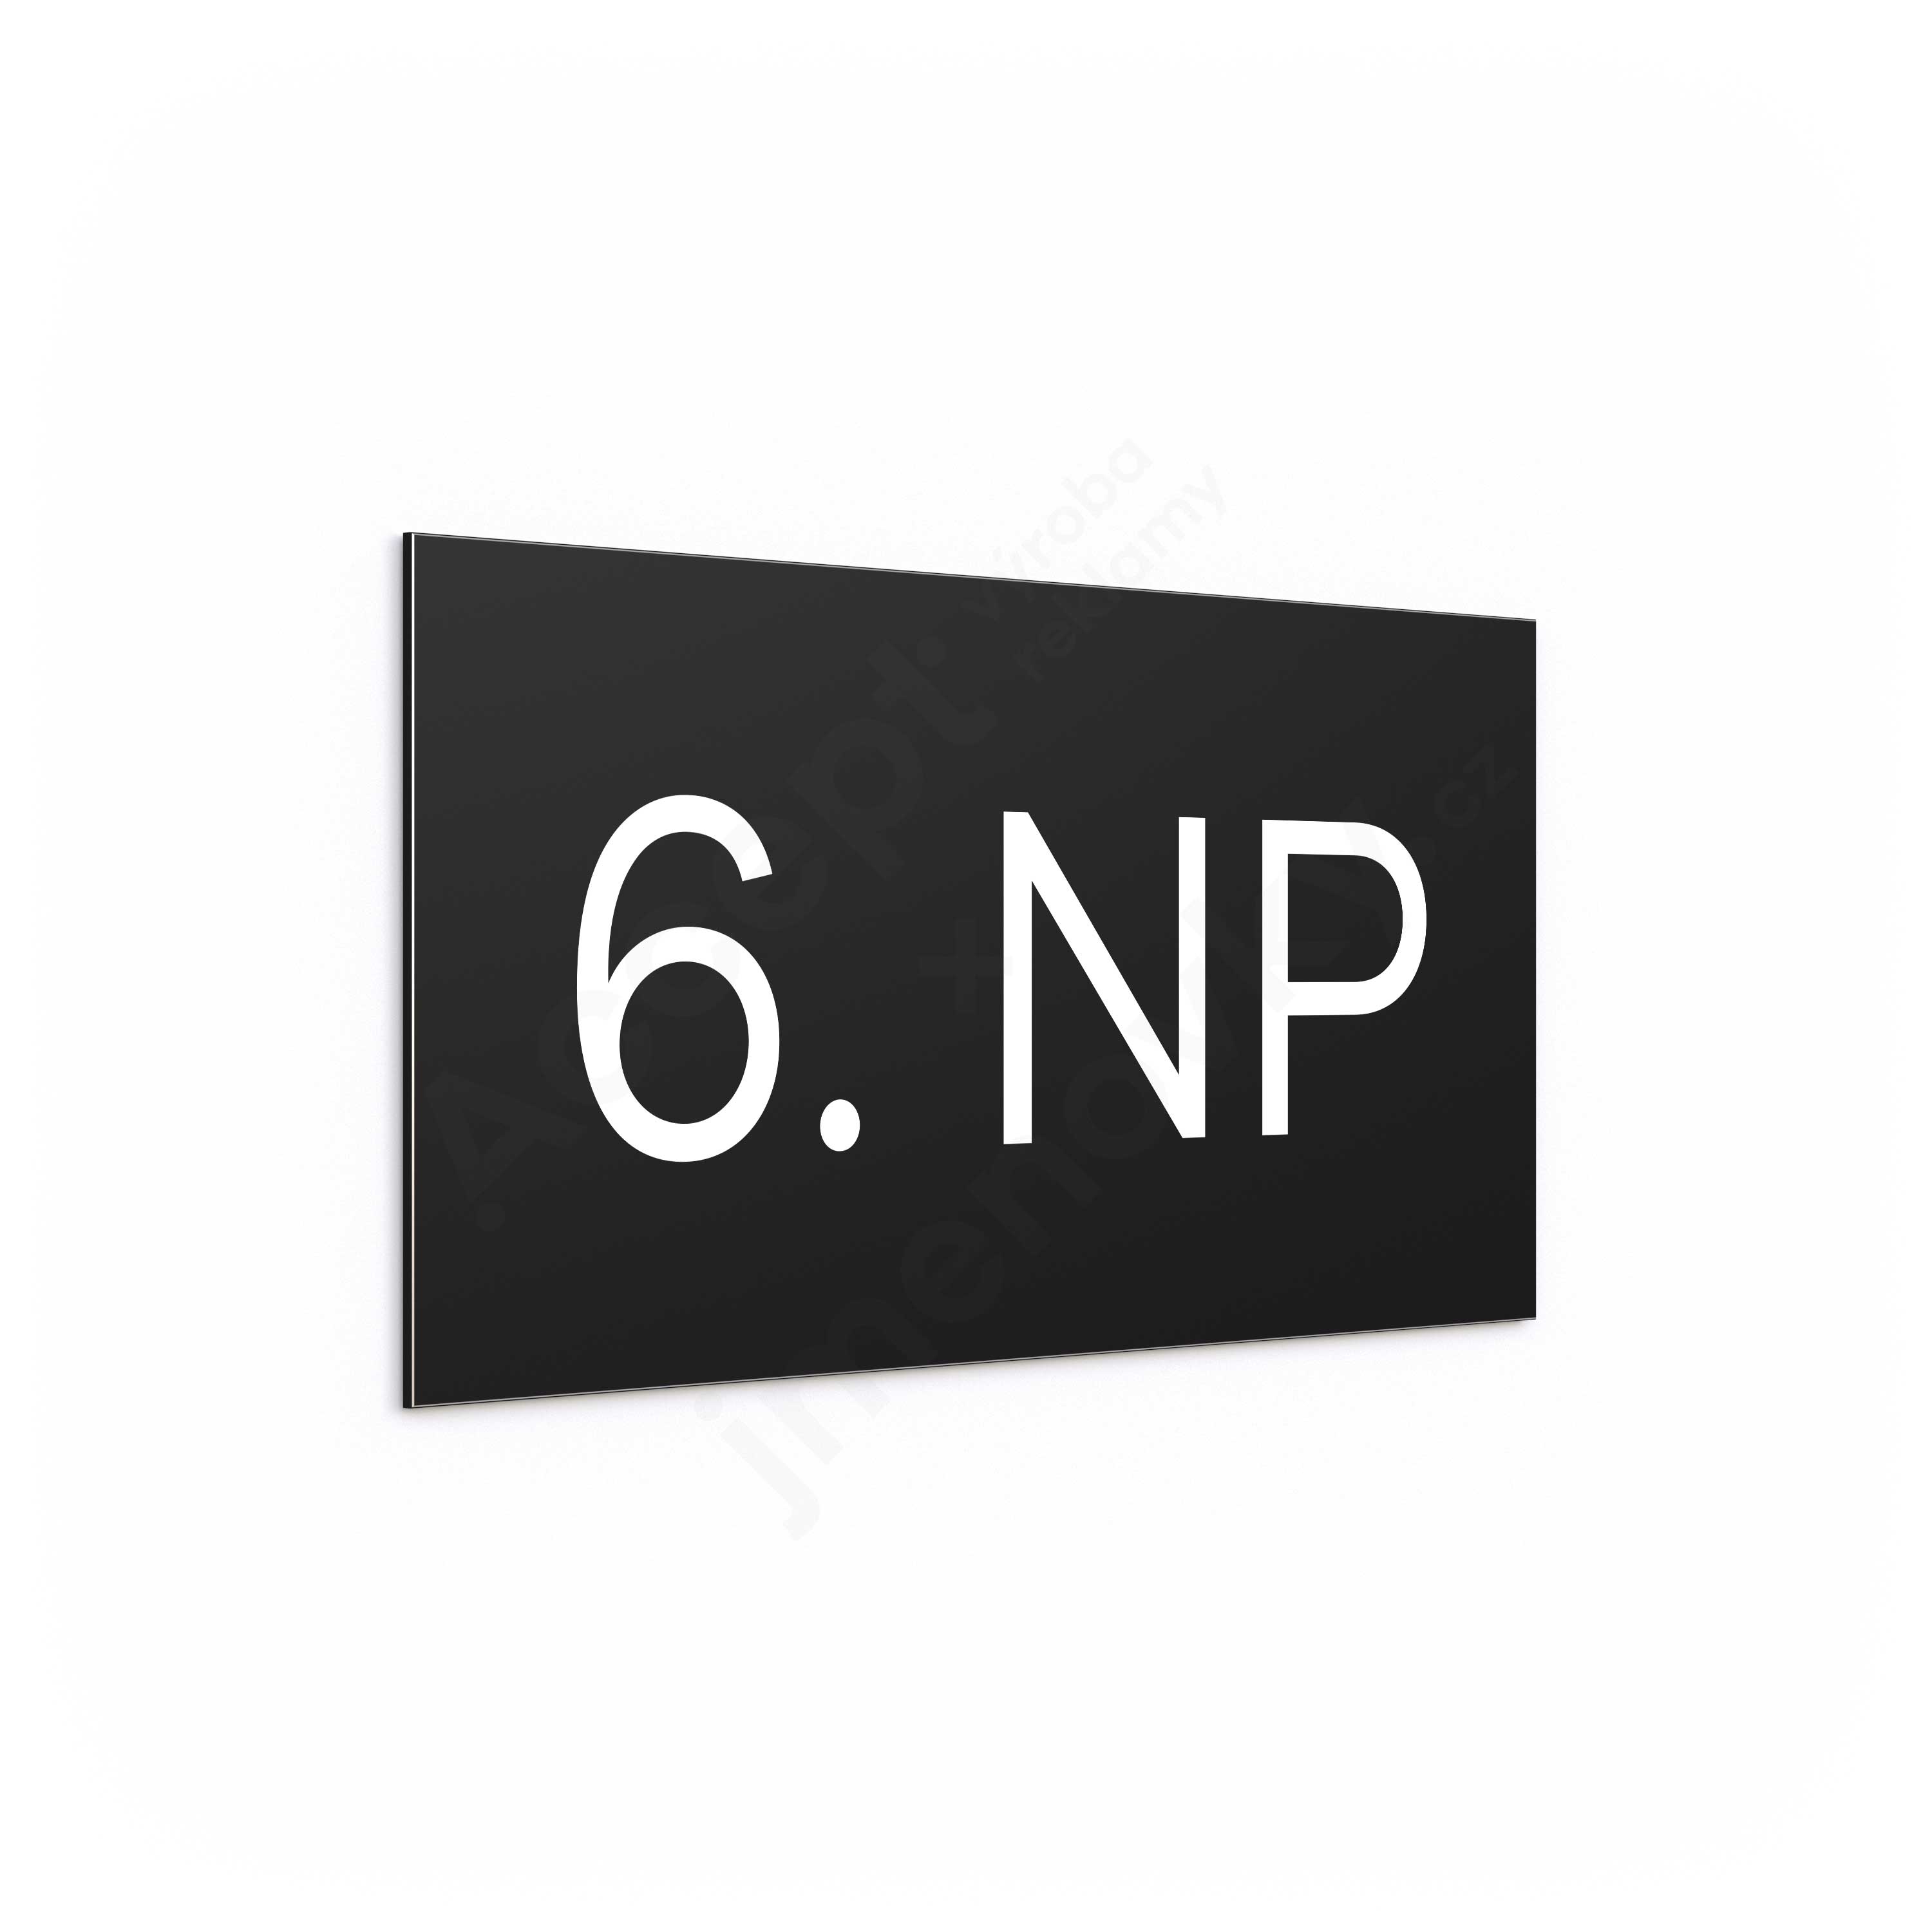 Označení podlaží "6. NP" - černá tabulka - bílý popis